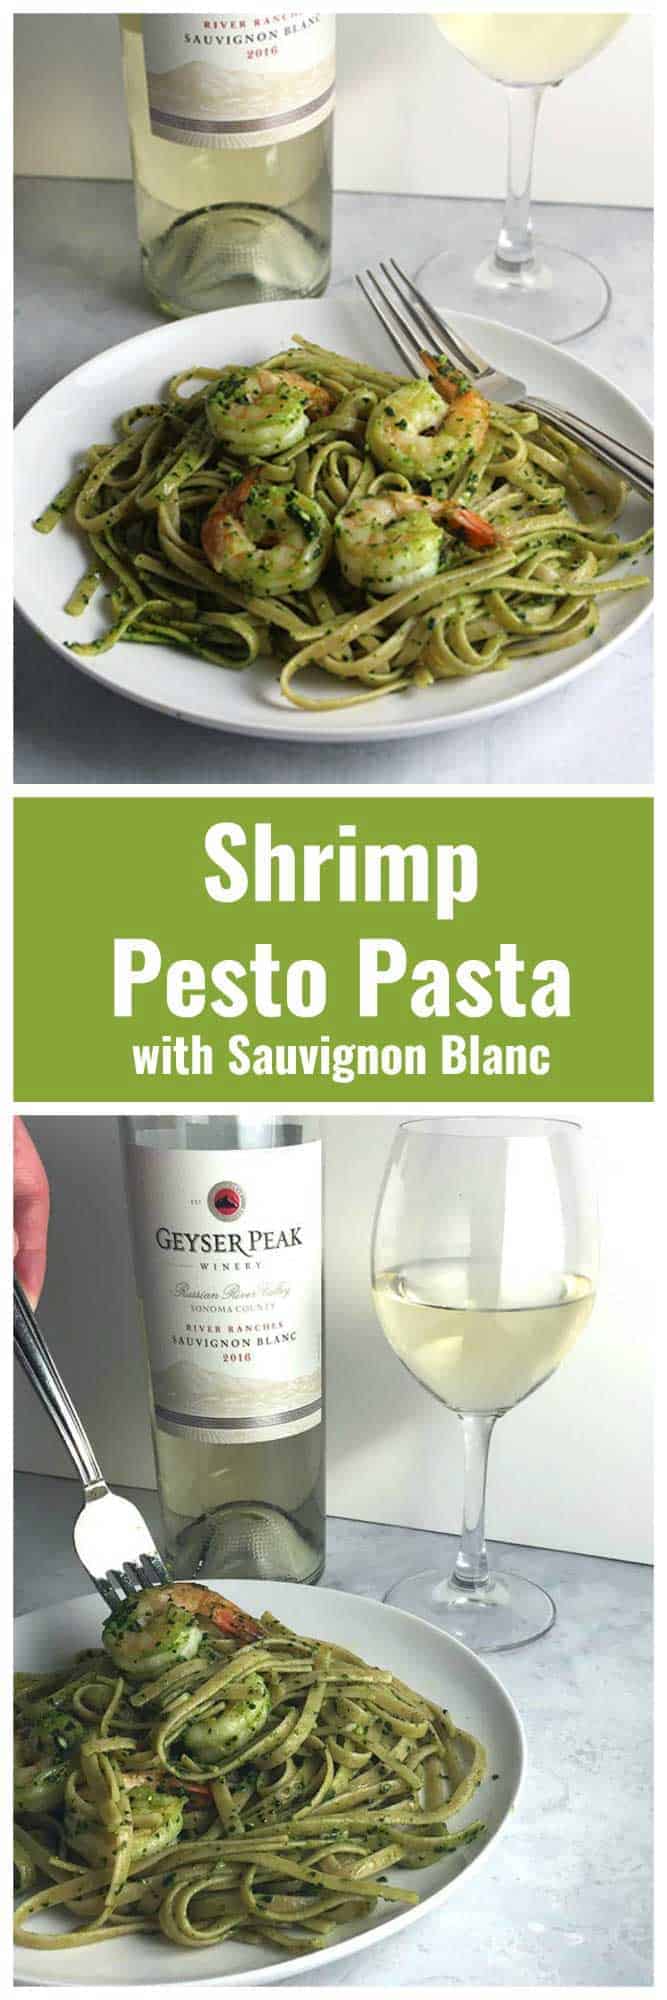 Shrimp Pesto Pasta is delicious paired with a good Sauvignon Blanc. #winepairing #SauvignonBlanc #shrimp